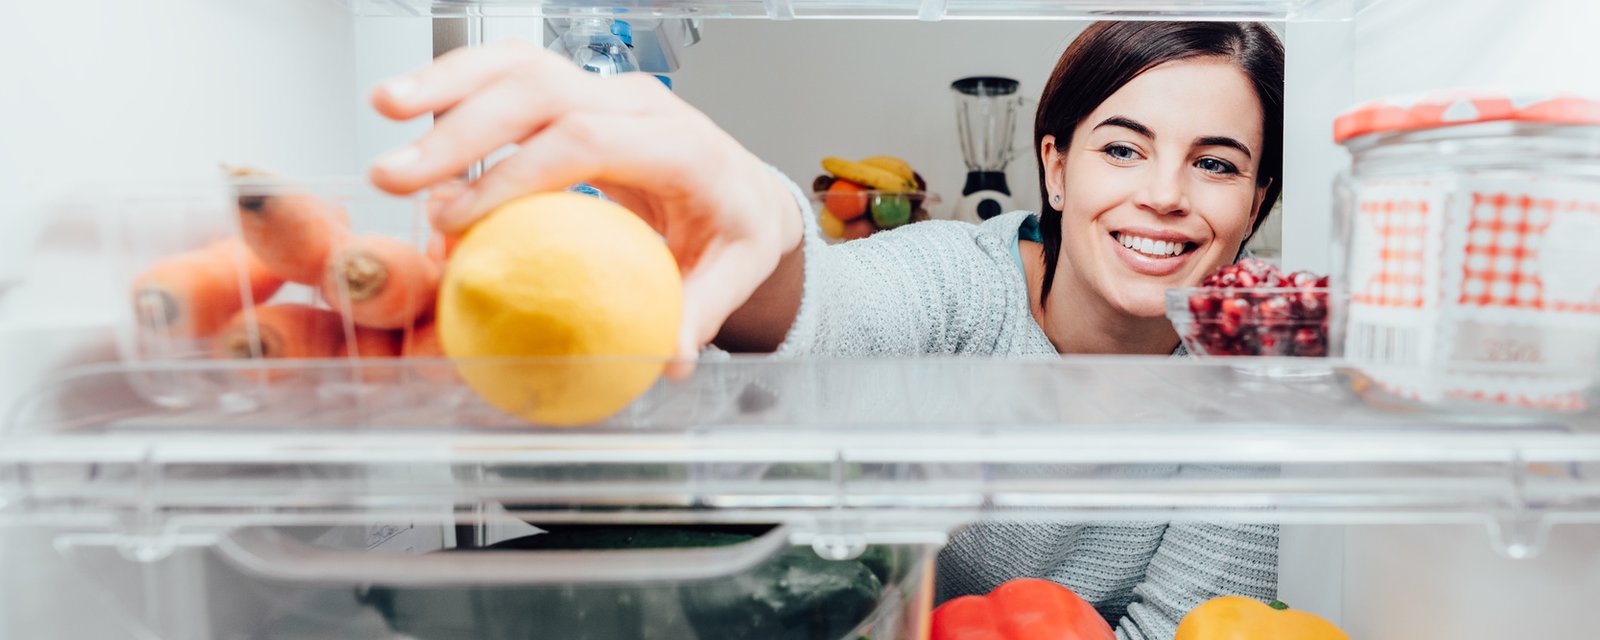 12 façons de garder votre réfrigérateur propre et en ordre